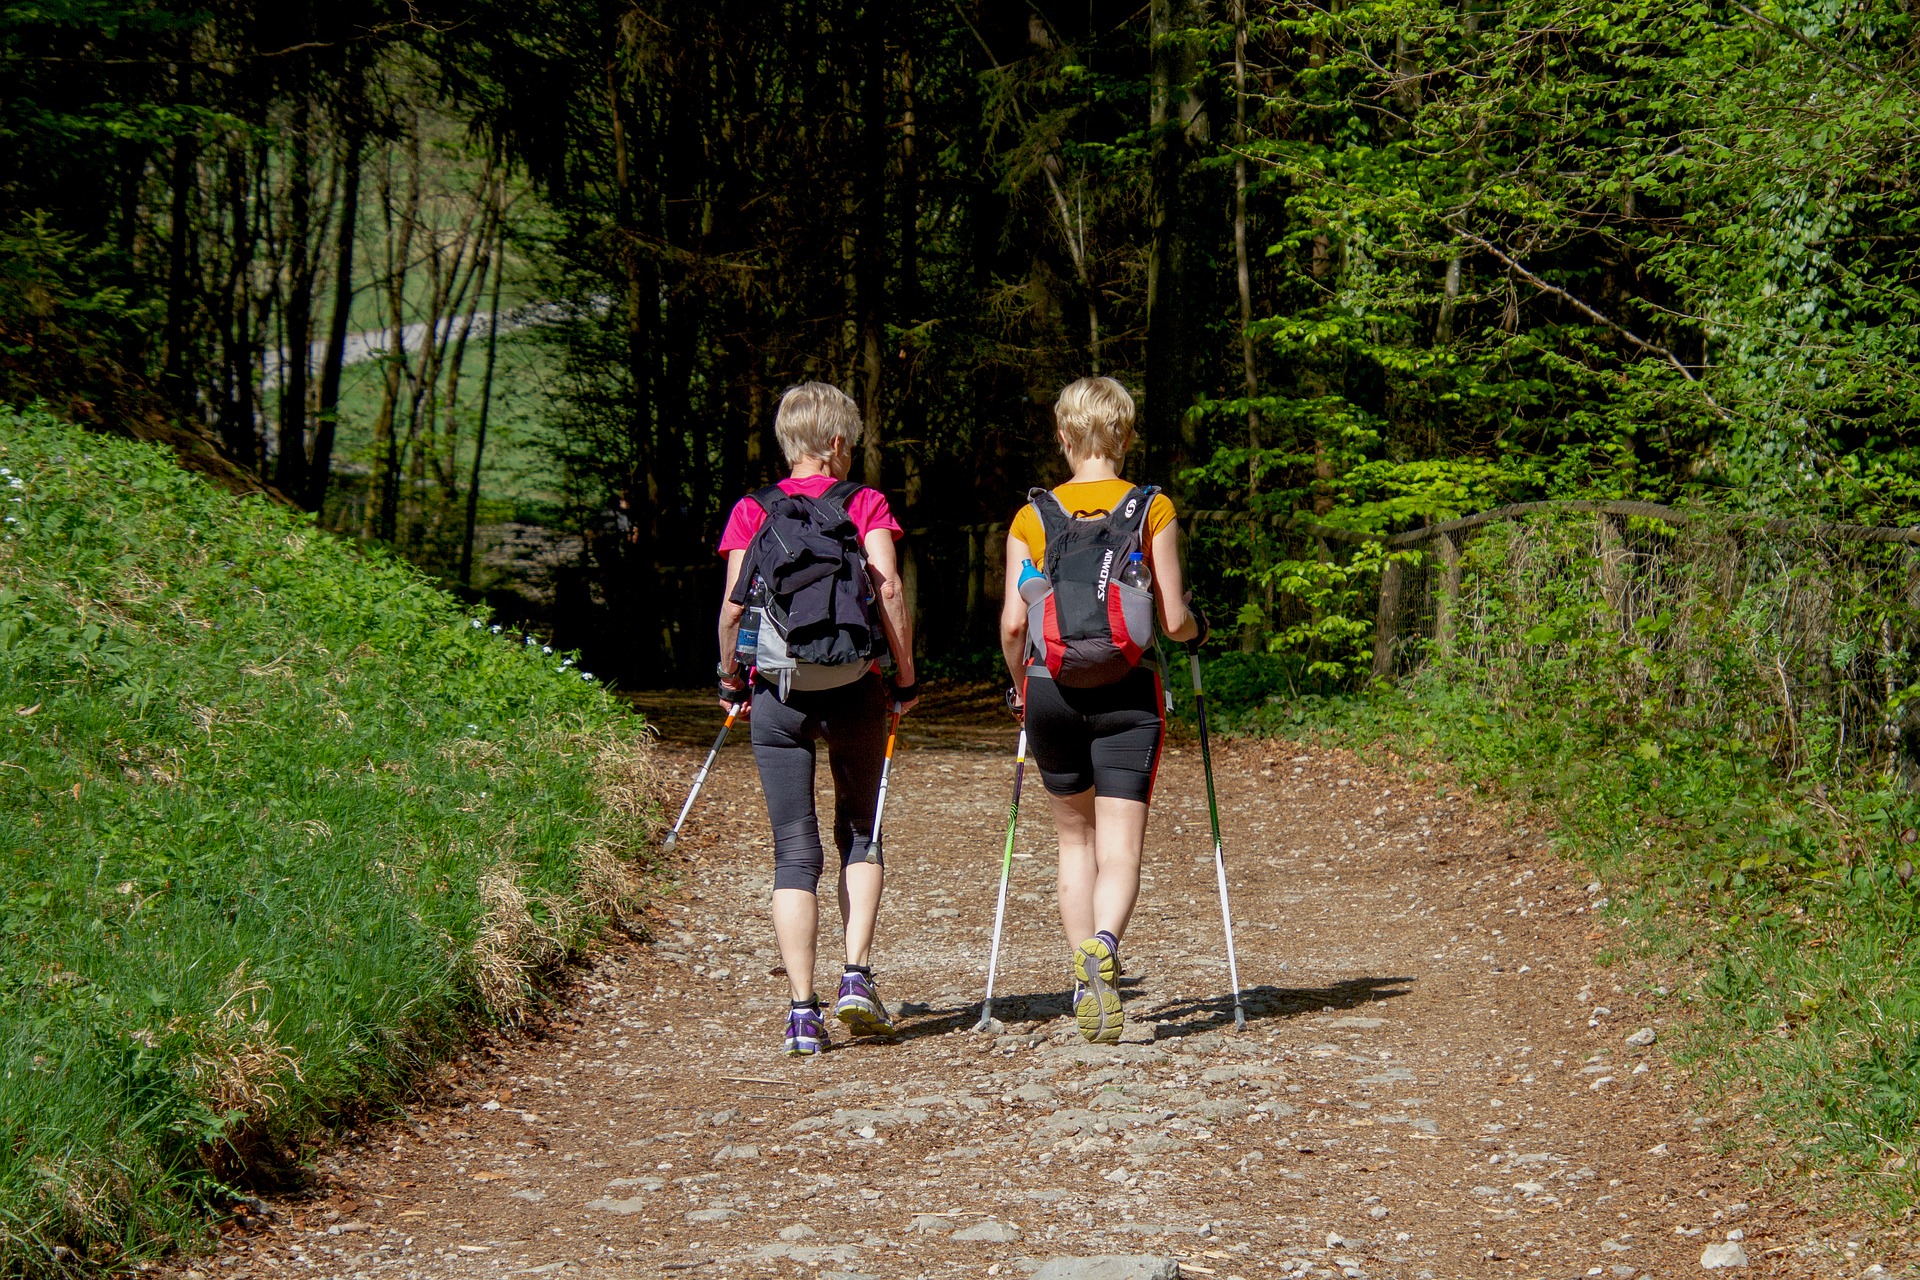 Beitragsbild zur Illustration - zwei Frauen beim Nordic Walking im Wald, aufgenommen von hinten